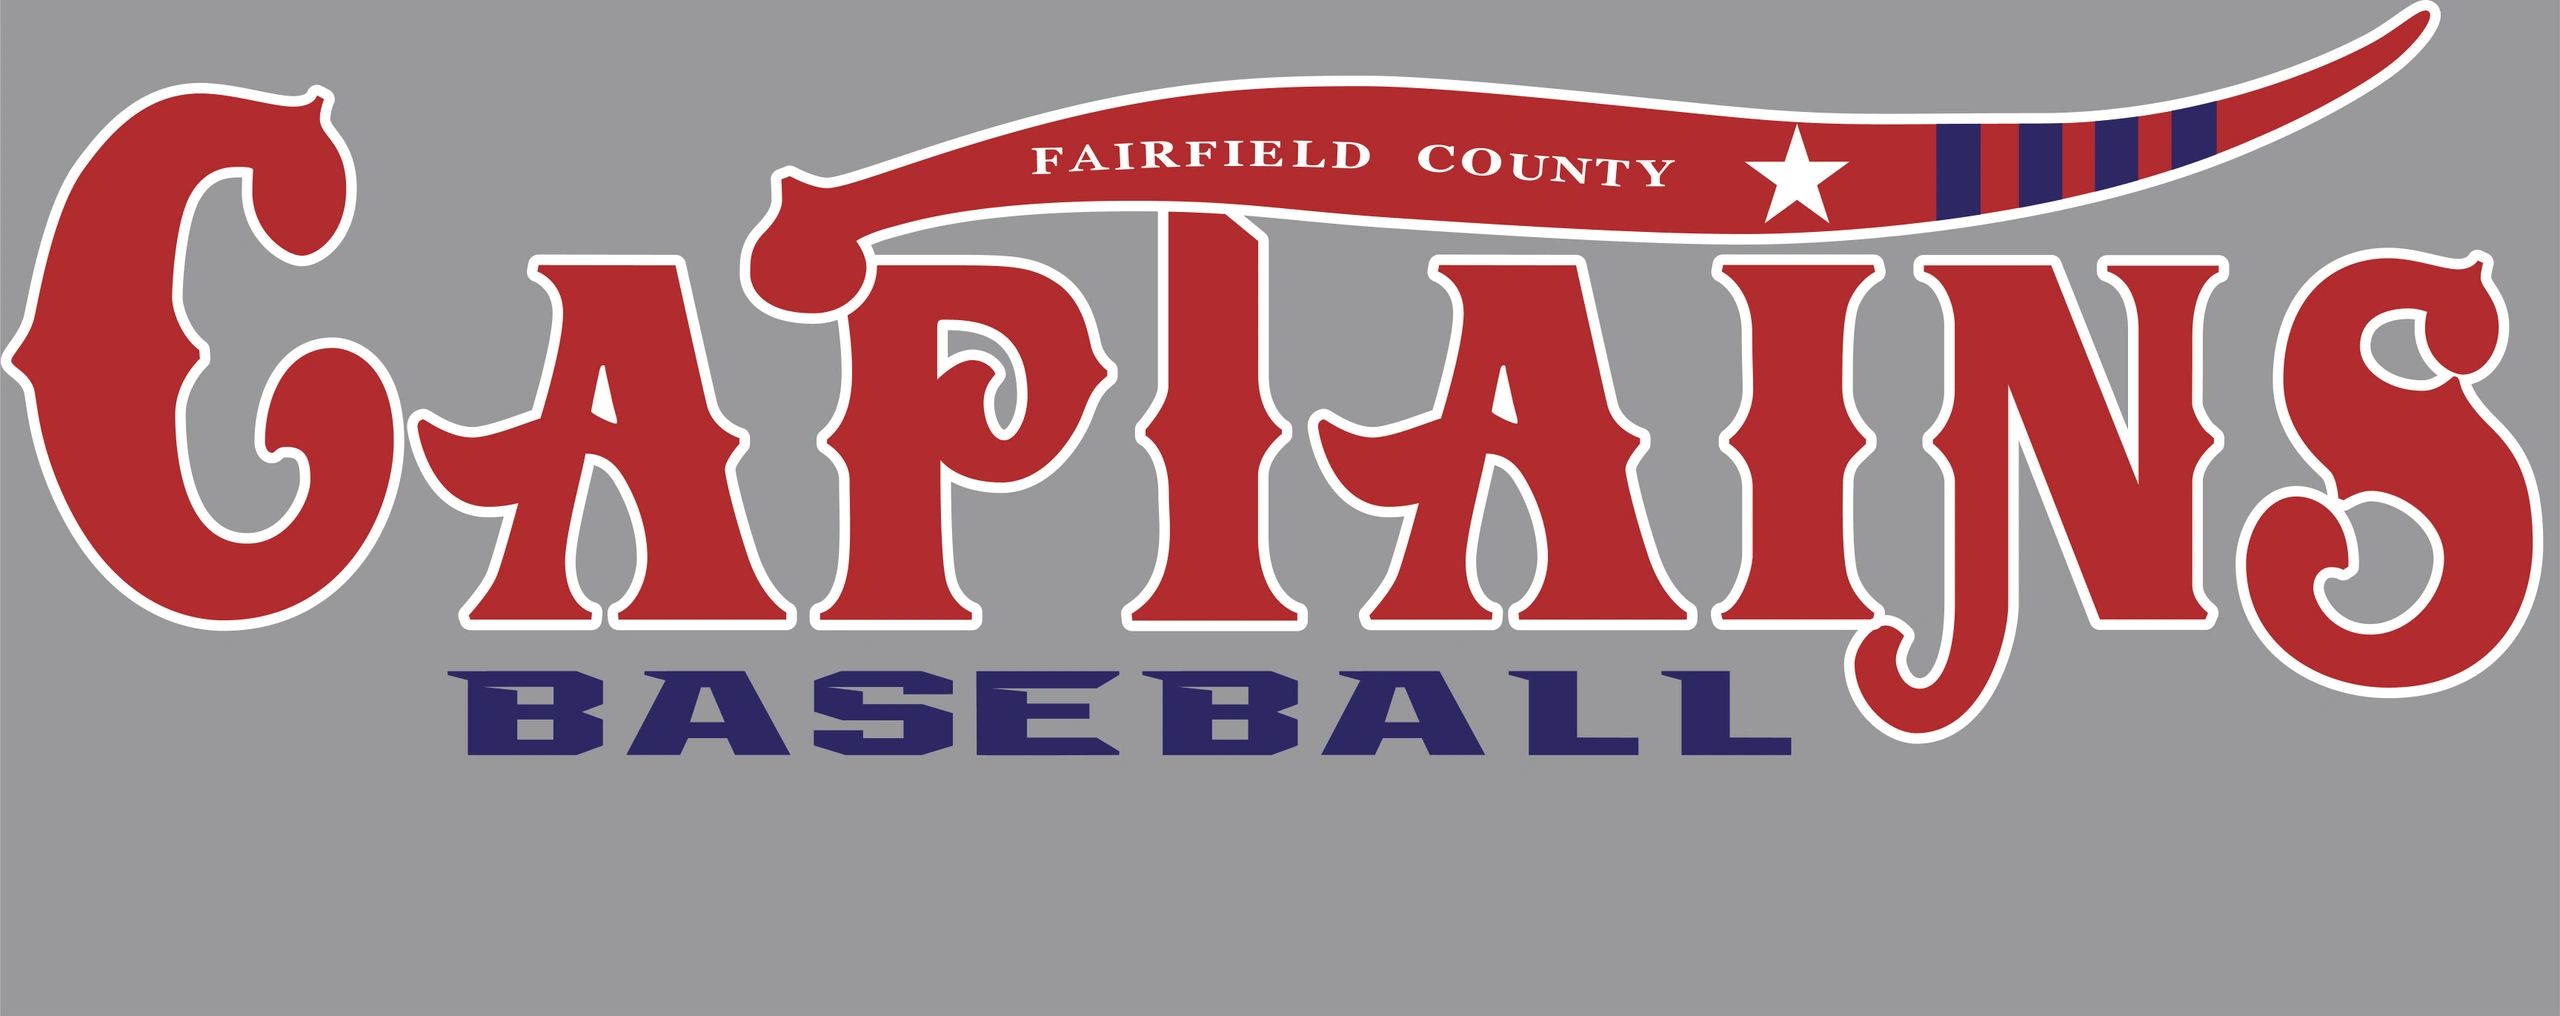 Fairfield County Captains - Travel Baseball, Fairfield County, CT